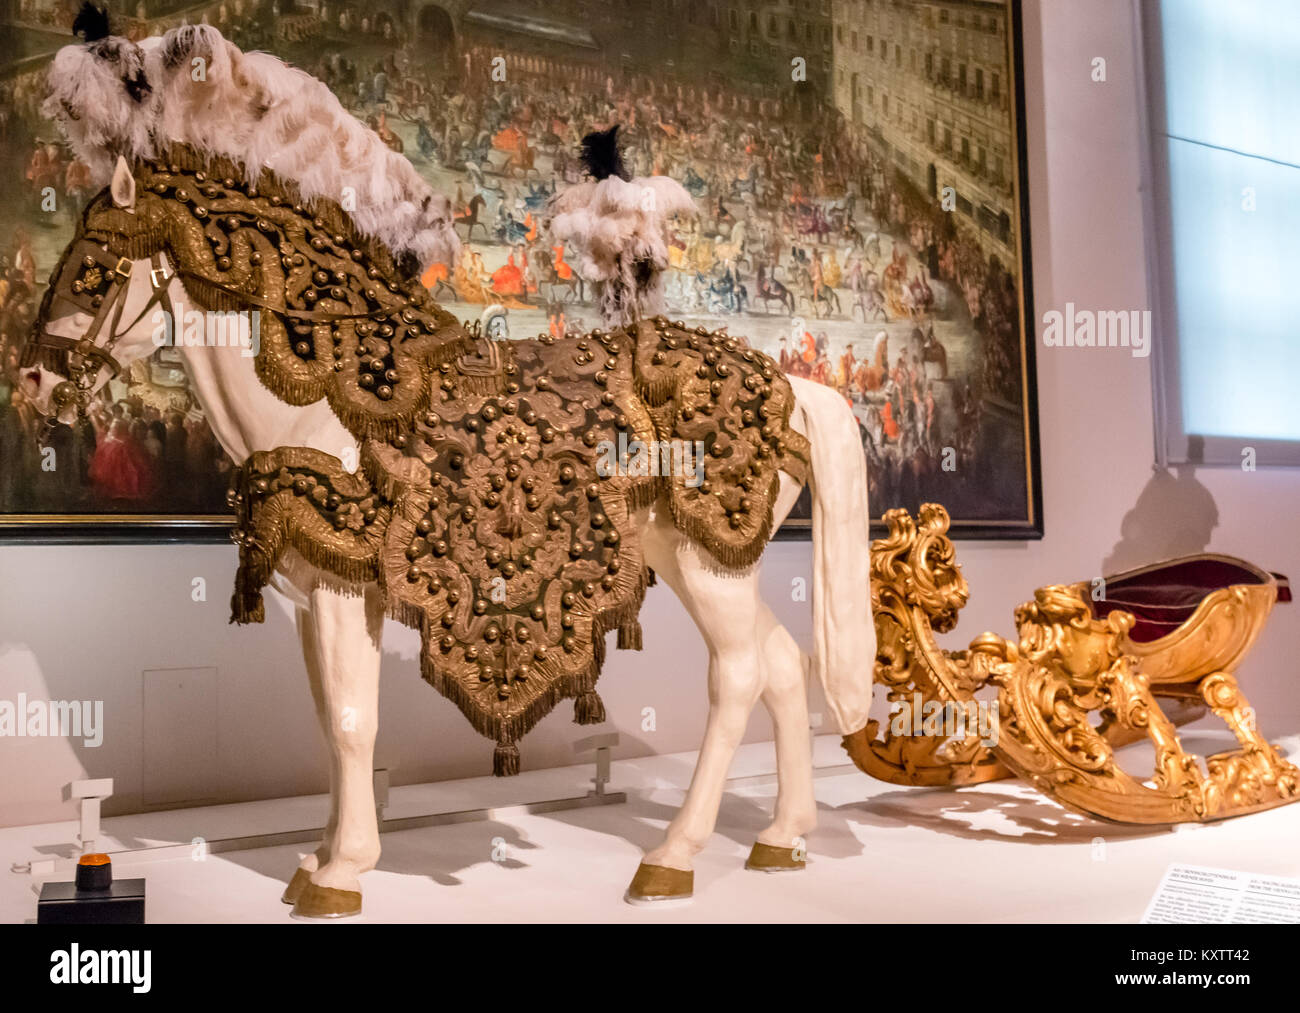 Ausstellung der reich verzierten Lipizzaner Pferde durch die Habsburger Monarchen verwendet, Wagenburg, Schloss Schönbrunn, Wien, Österreich, Europa Stockfoto